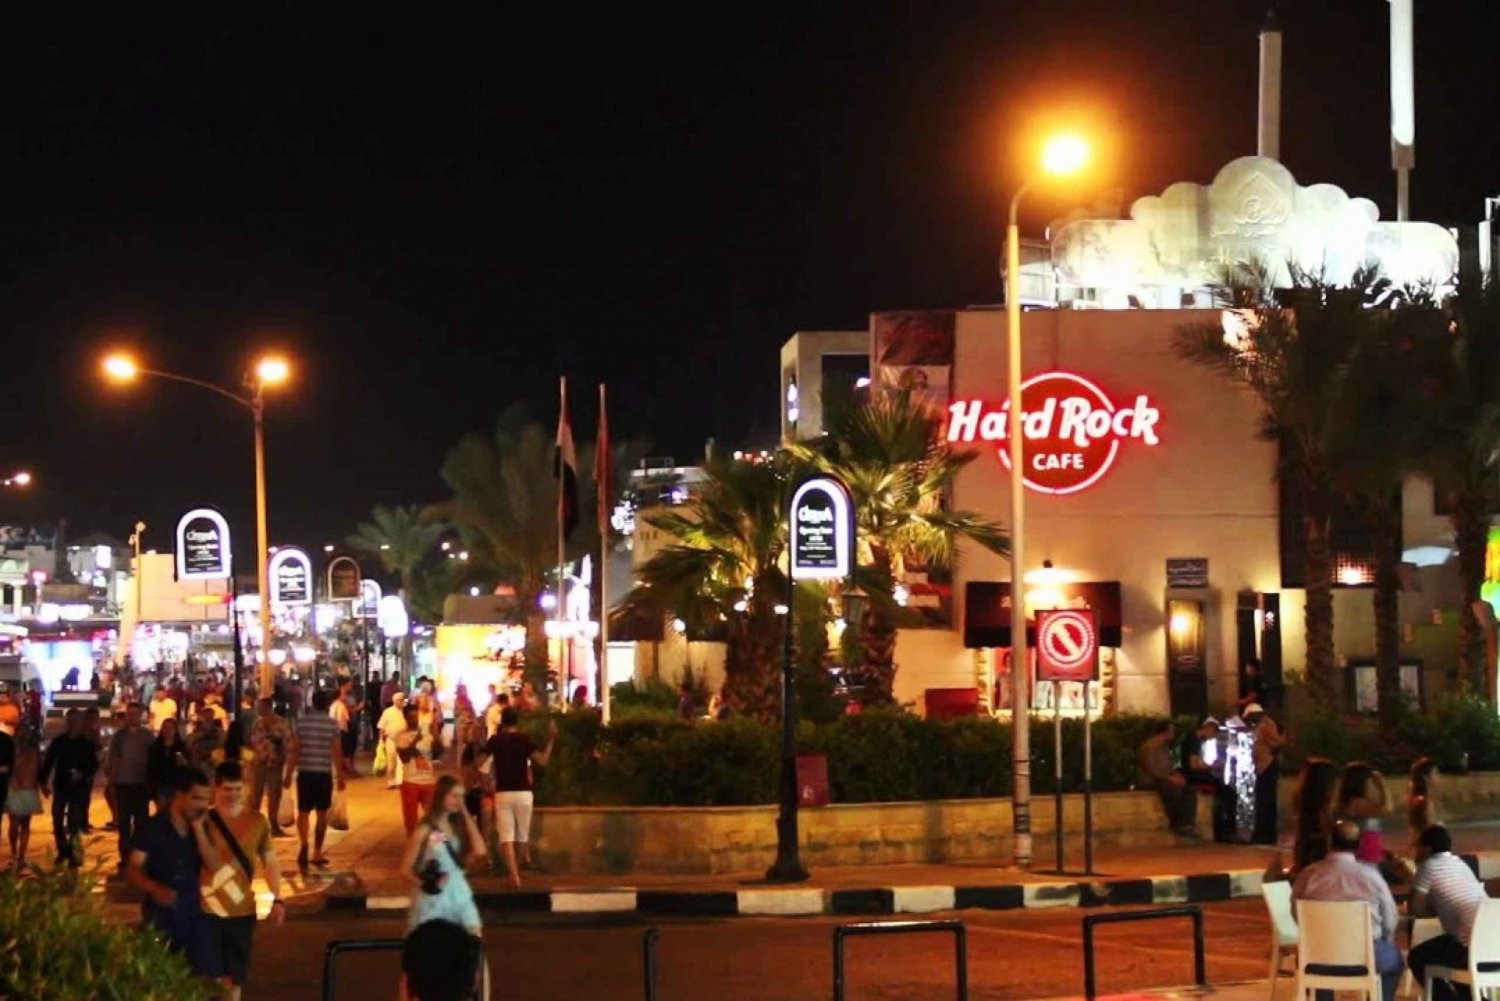 Sharm el-Sheikh: Islamische und koptische Sehenswürdigkeiten Tour mit Mittagessen